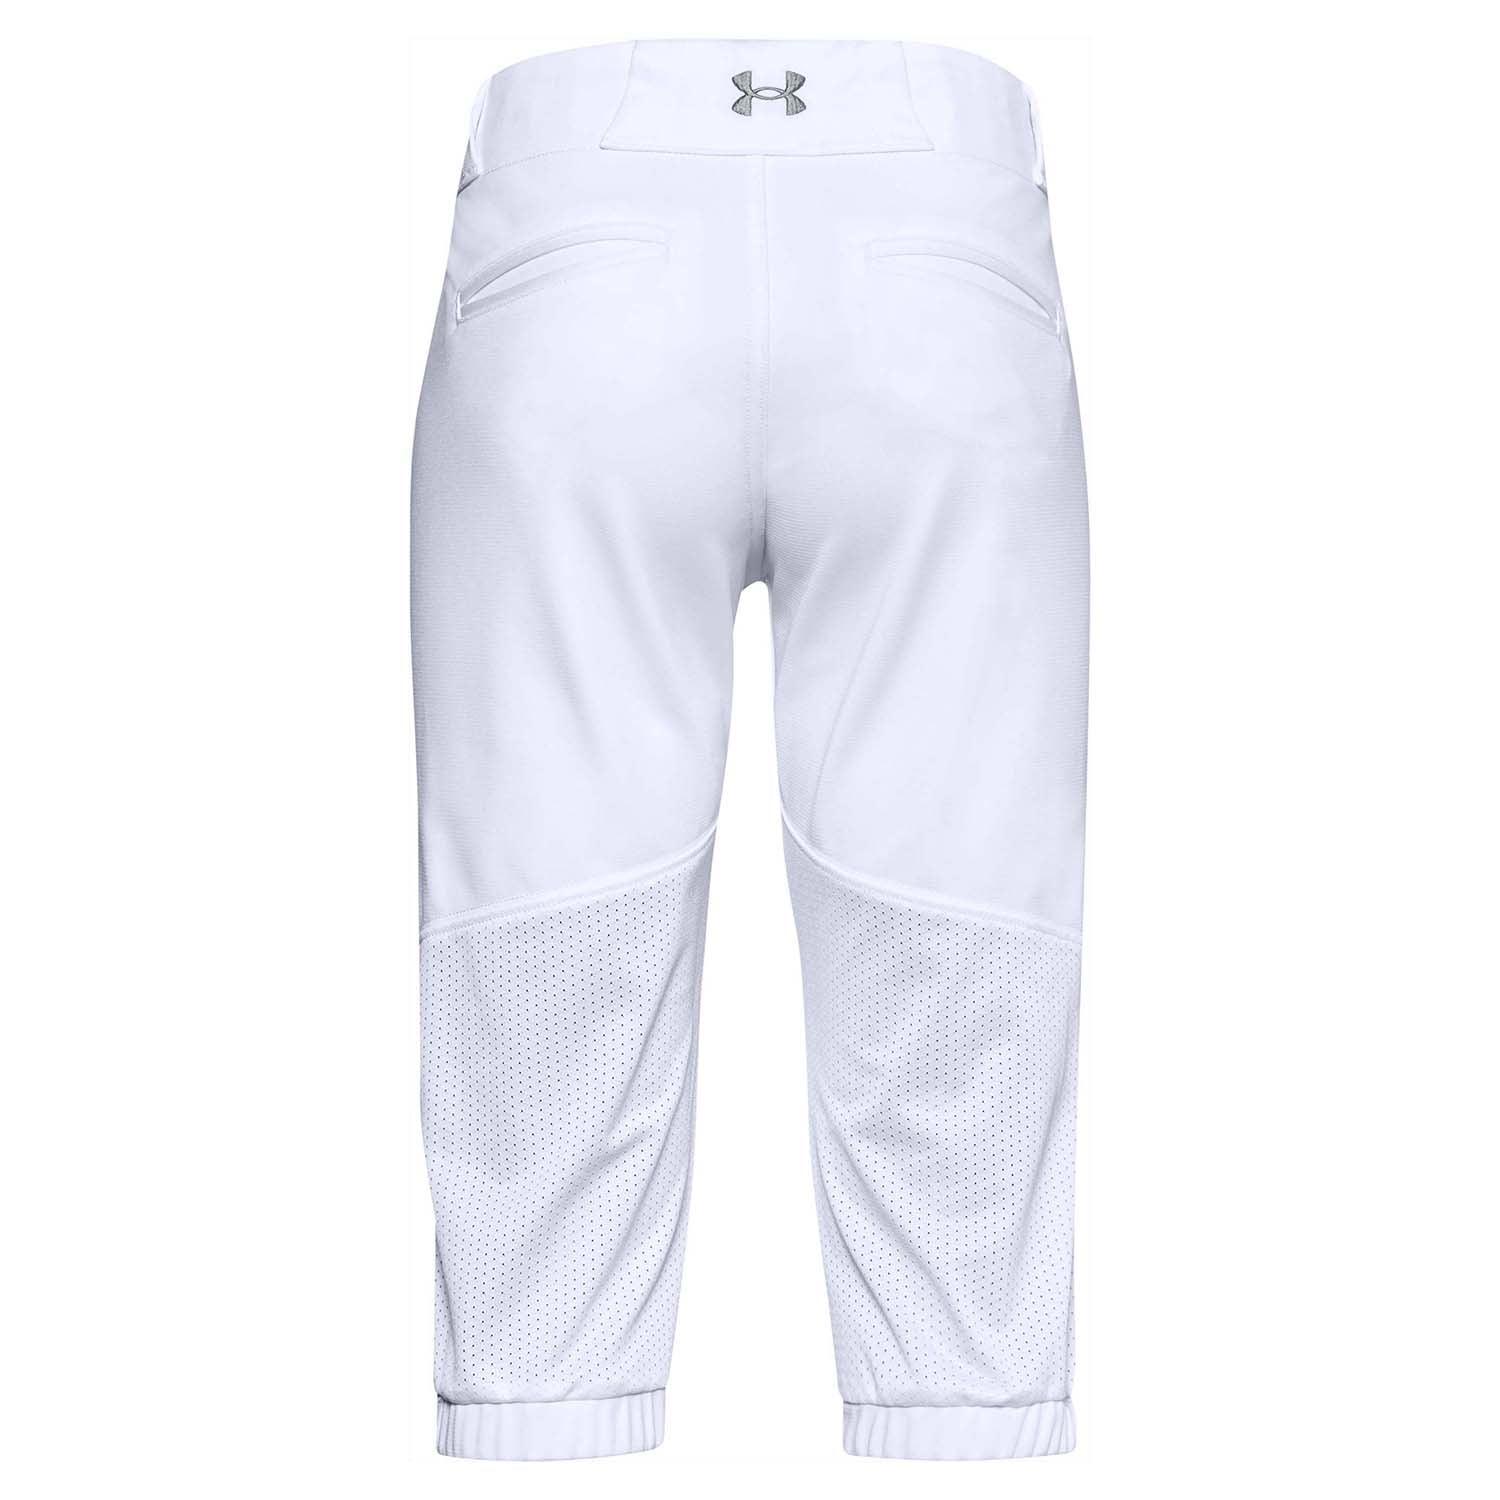 Augusta Sportswear 811 - Youth Softball/Baseball Pants